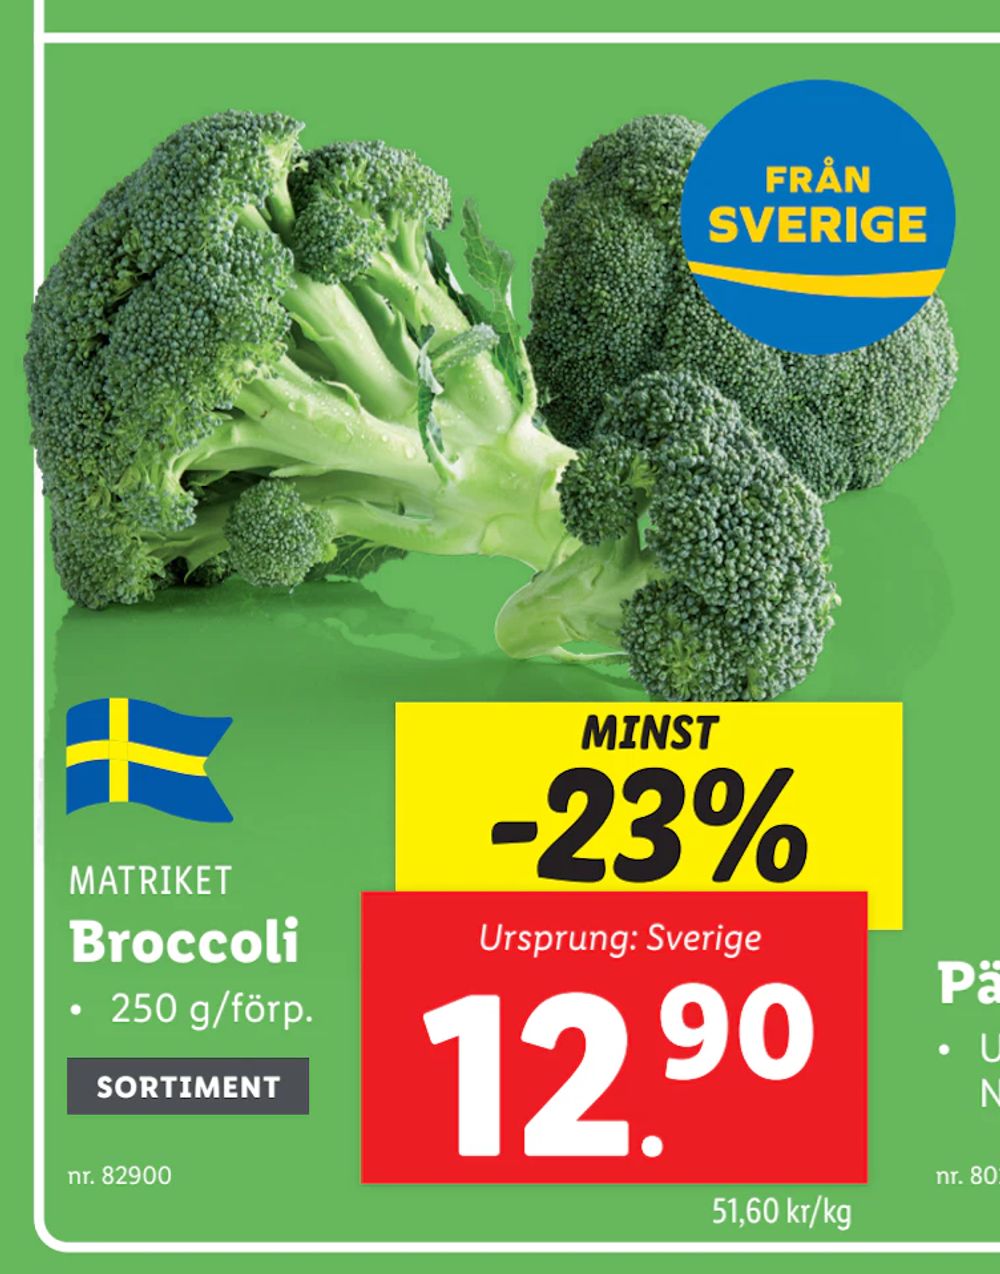 Erbjudanden på Broccoli från Lidl för 12,90 kr